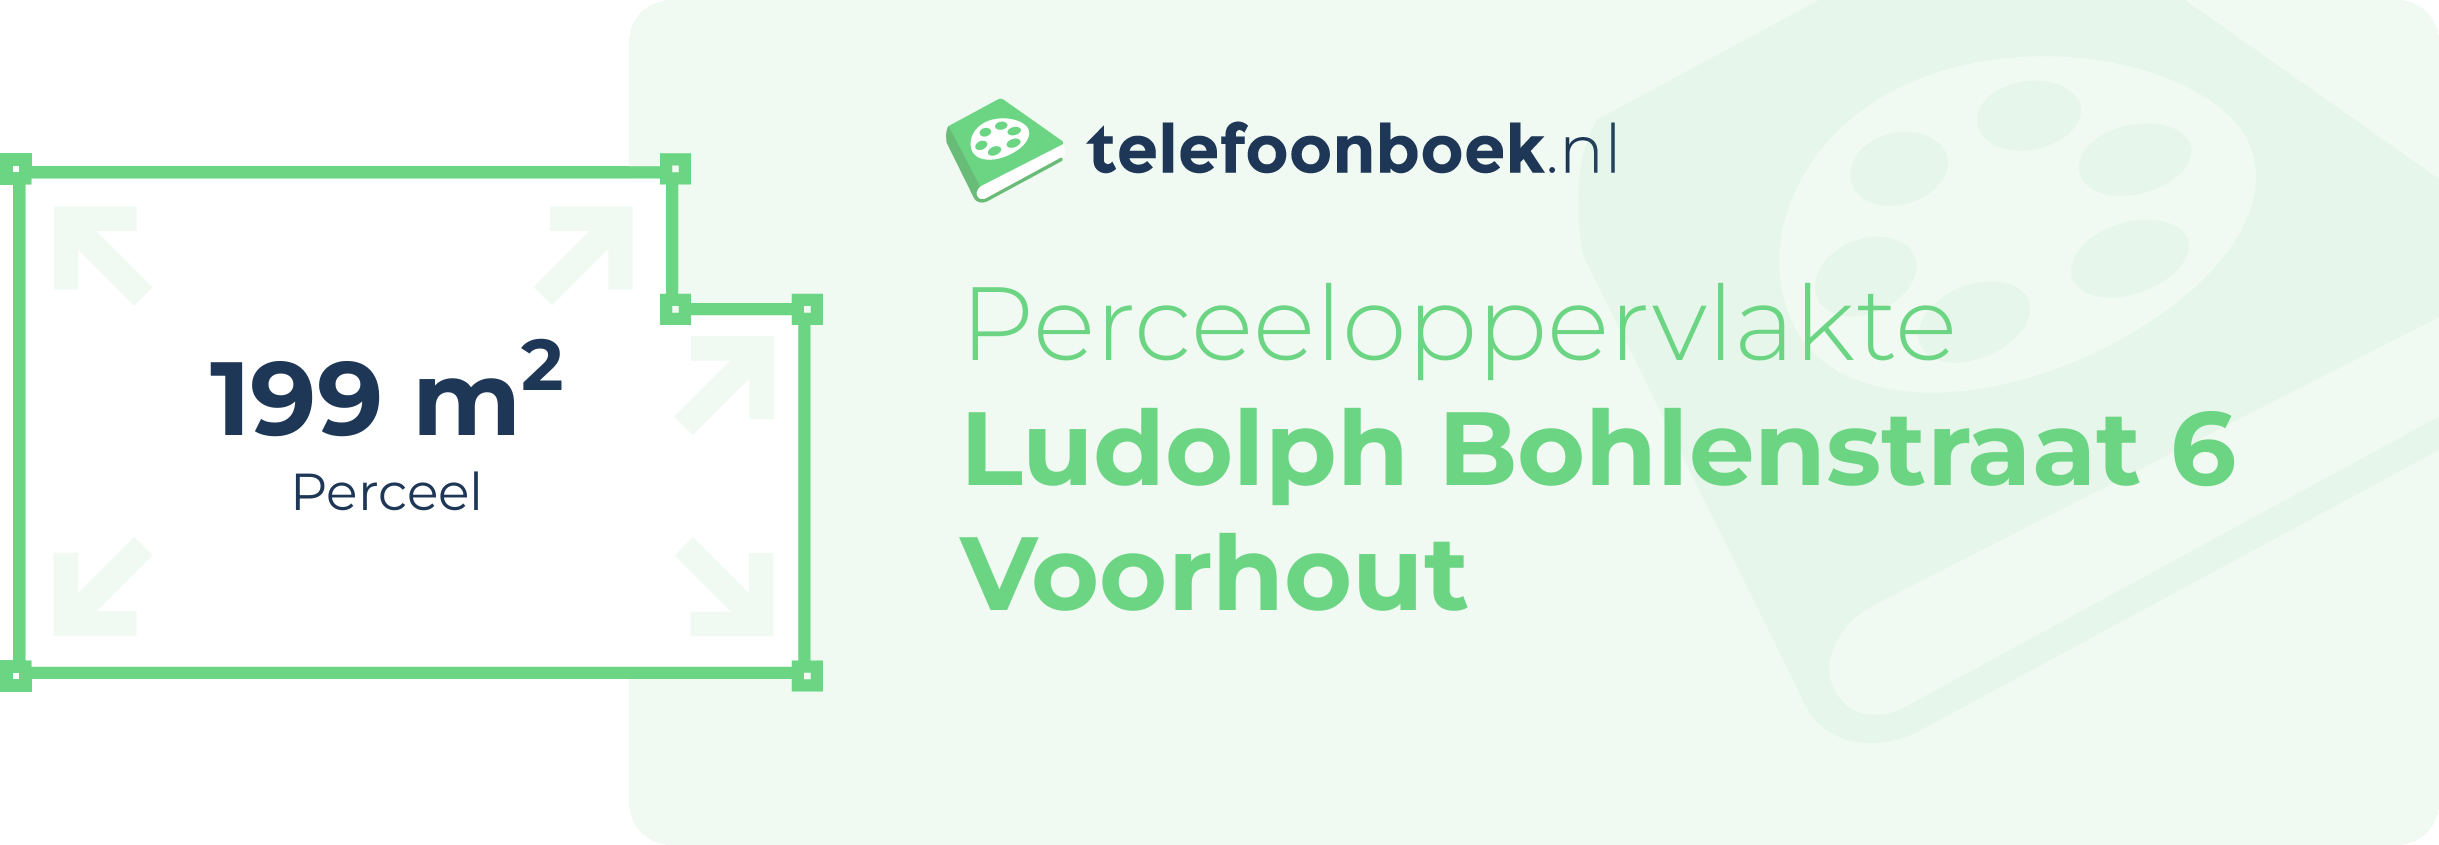 Perceeloppervlakte Ludolph Bohlenstraat 6 Voorhout